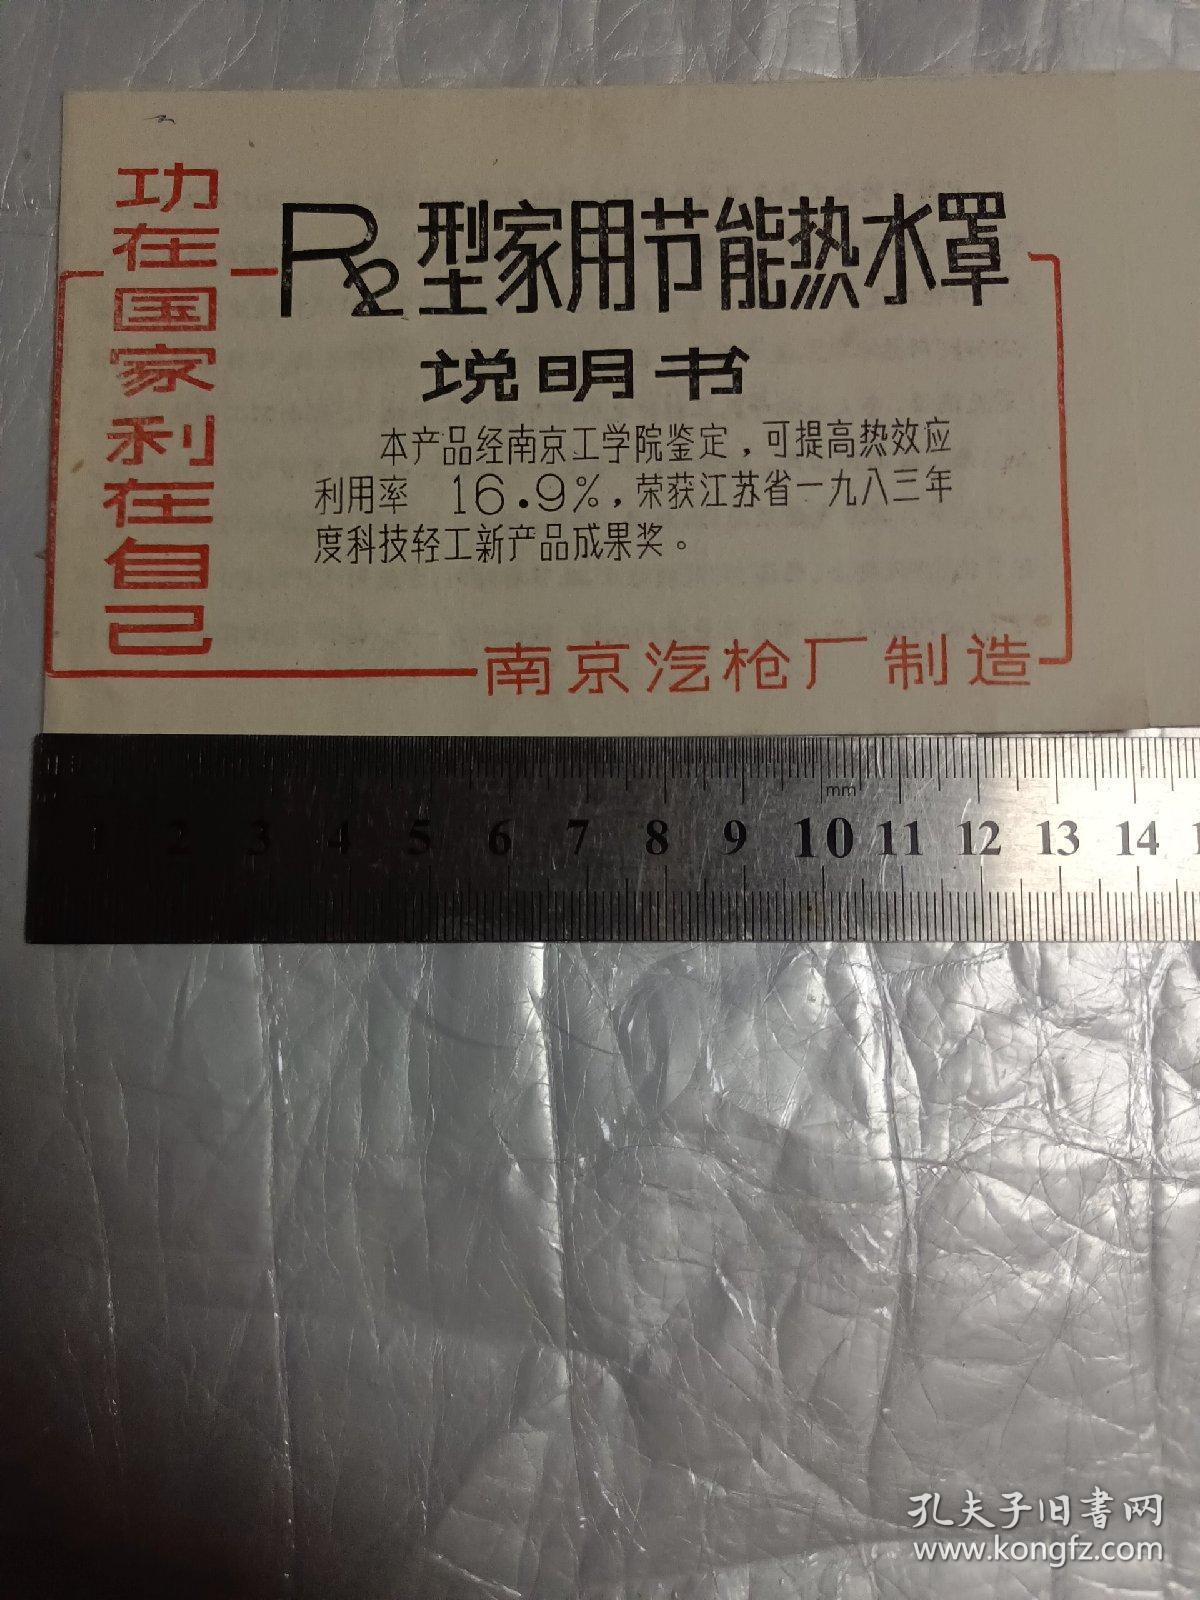 R2型家用节能热水罩说明书(南京汽枪厂制造)